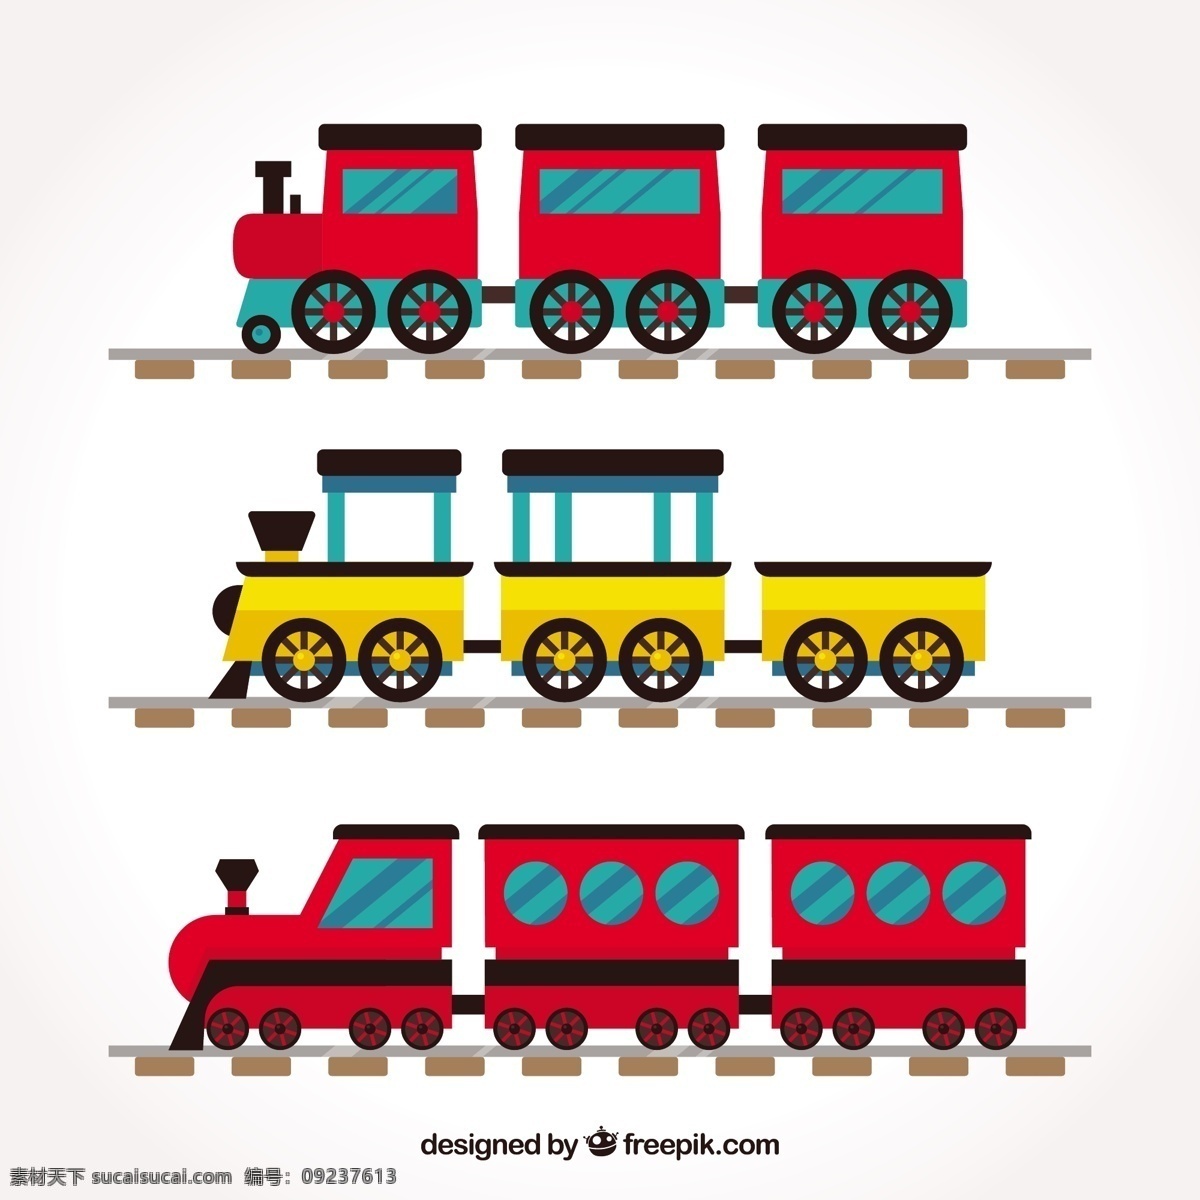 色彩 丰富 平面设计 火车 旅游 卡通 彩色 平板 速度 交通 娱乐 游戏 机器 玩具 发动机 收集 车站 设备 机械